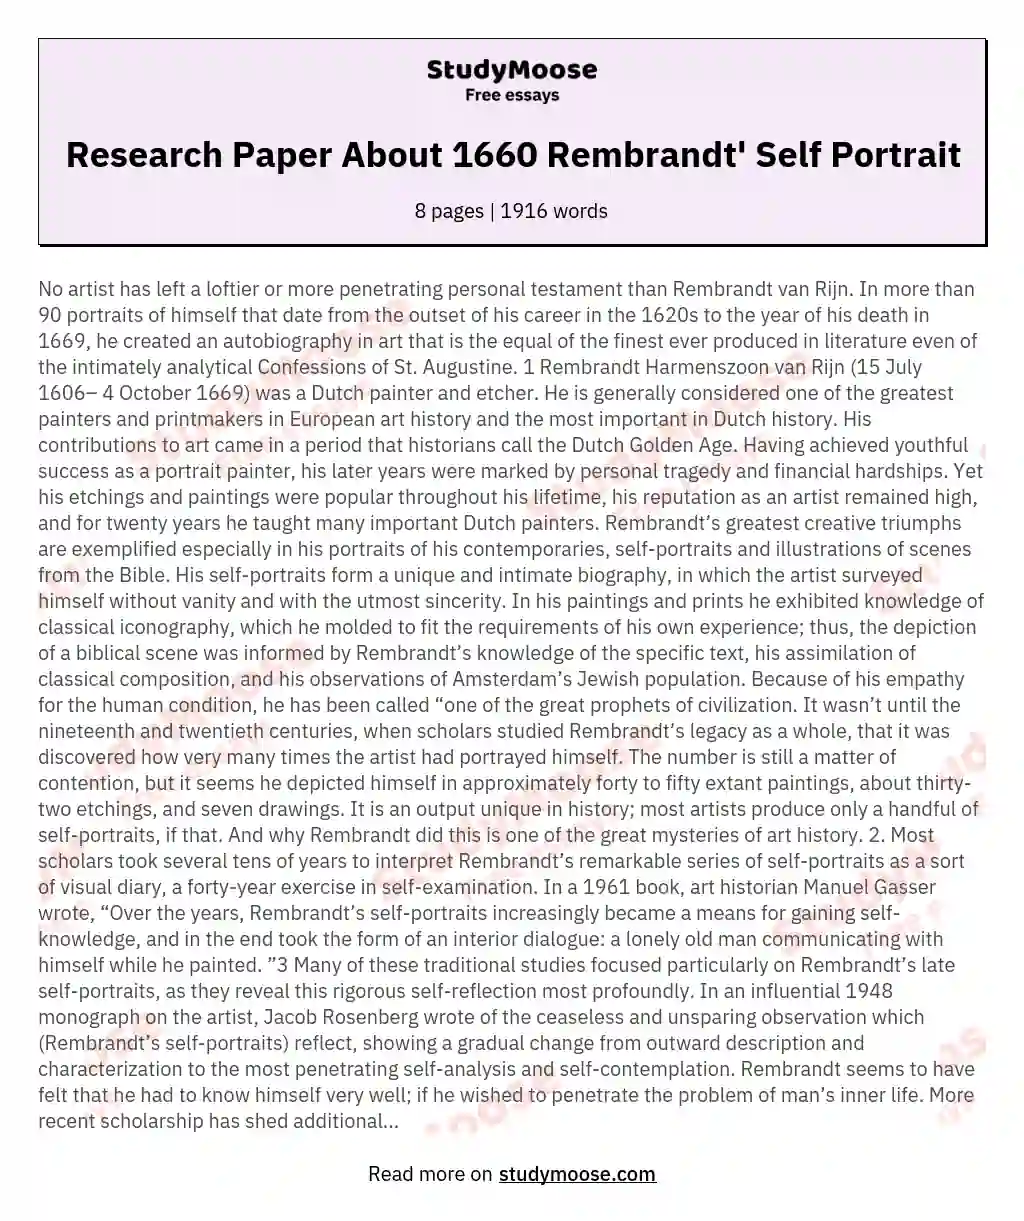 Research Paper About 1660 Rembrandt' Self Portrait essay